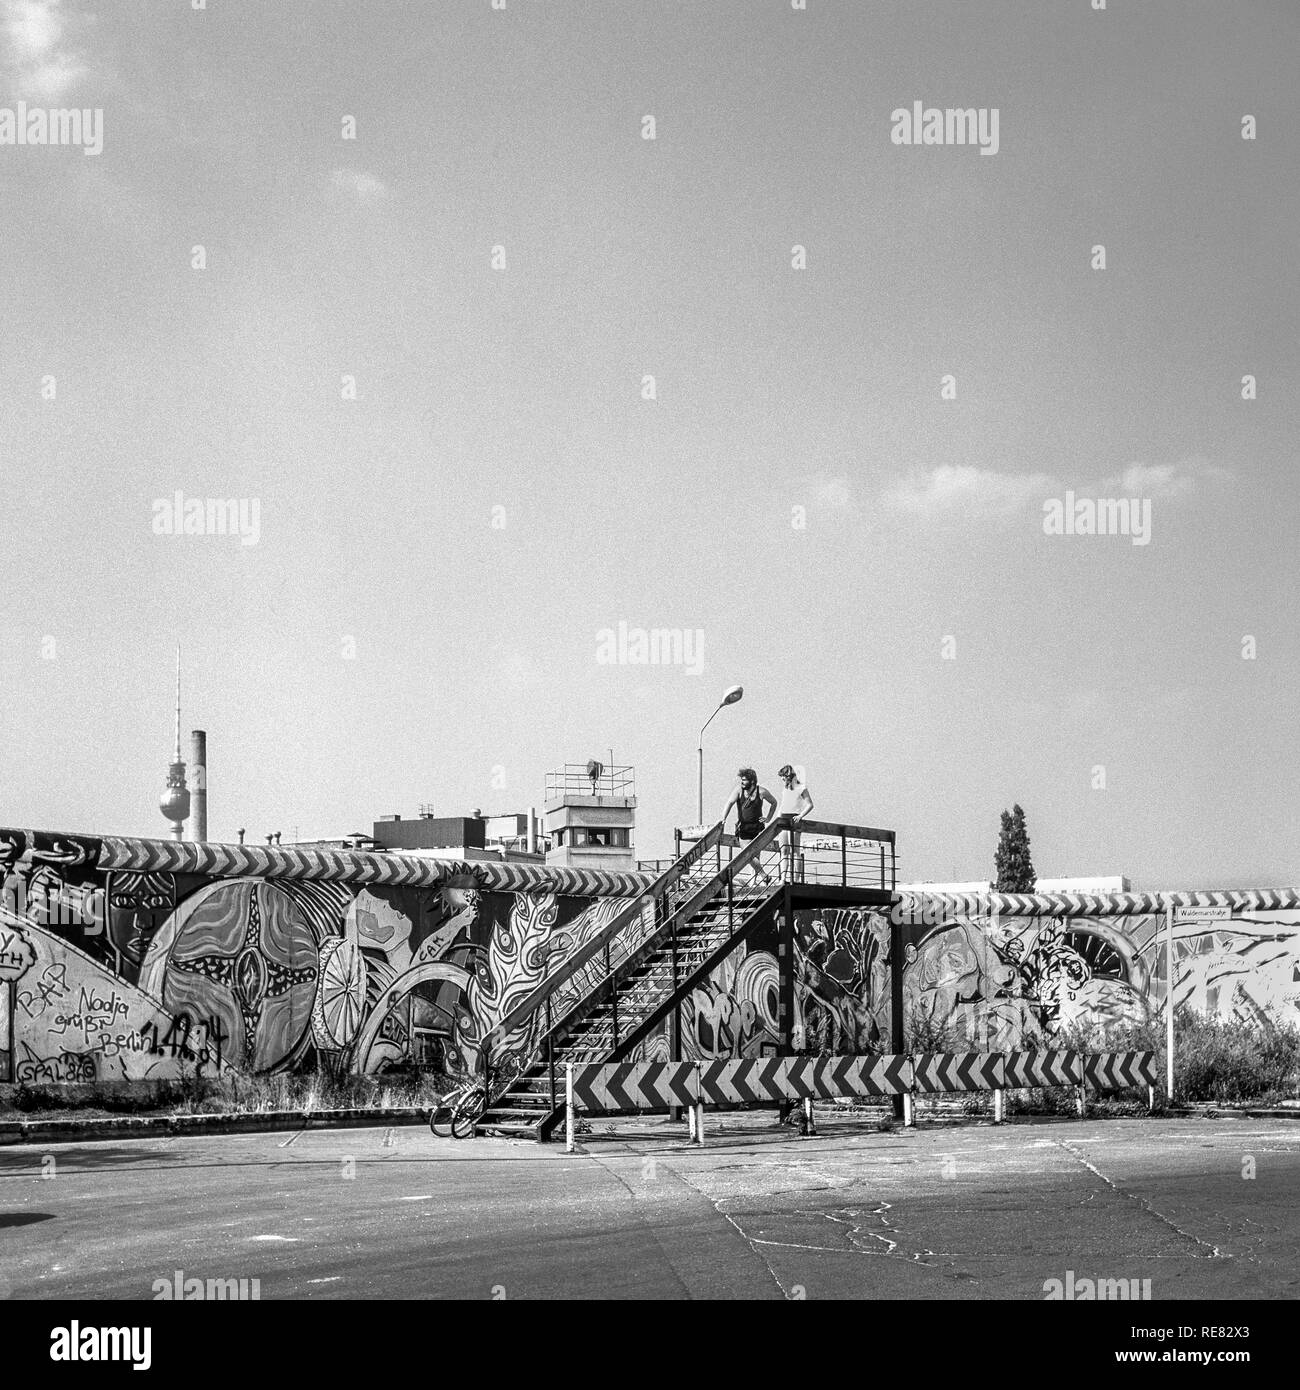 Août 1986, les graffitis du mur de Berlin, young couple sur la plate-forme d'observation, Berlin est watchtower, Kreuzberg, Berlin Ouest, l'Allemagne, l'Europe, Banque D'Images